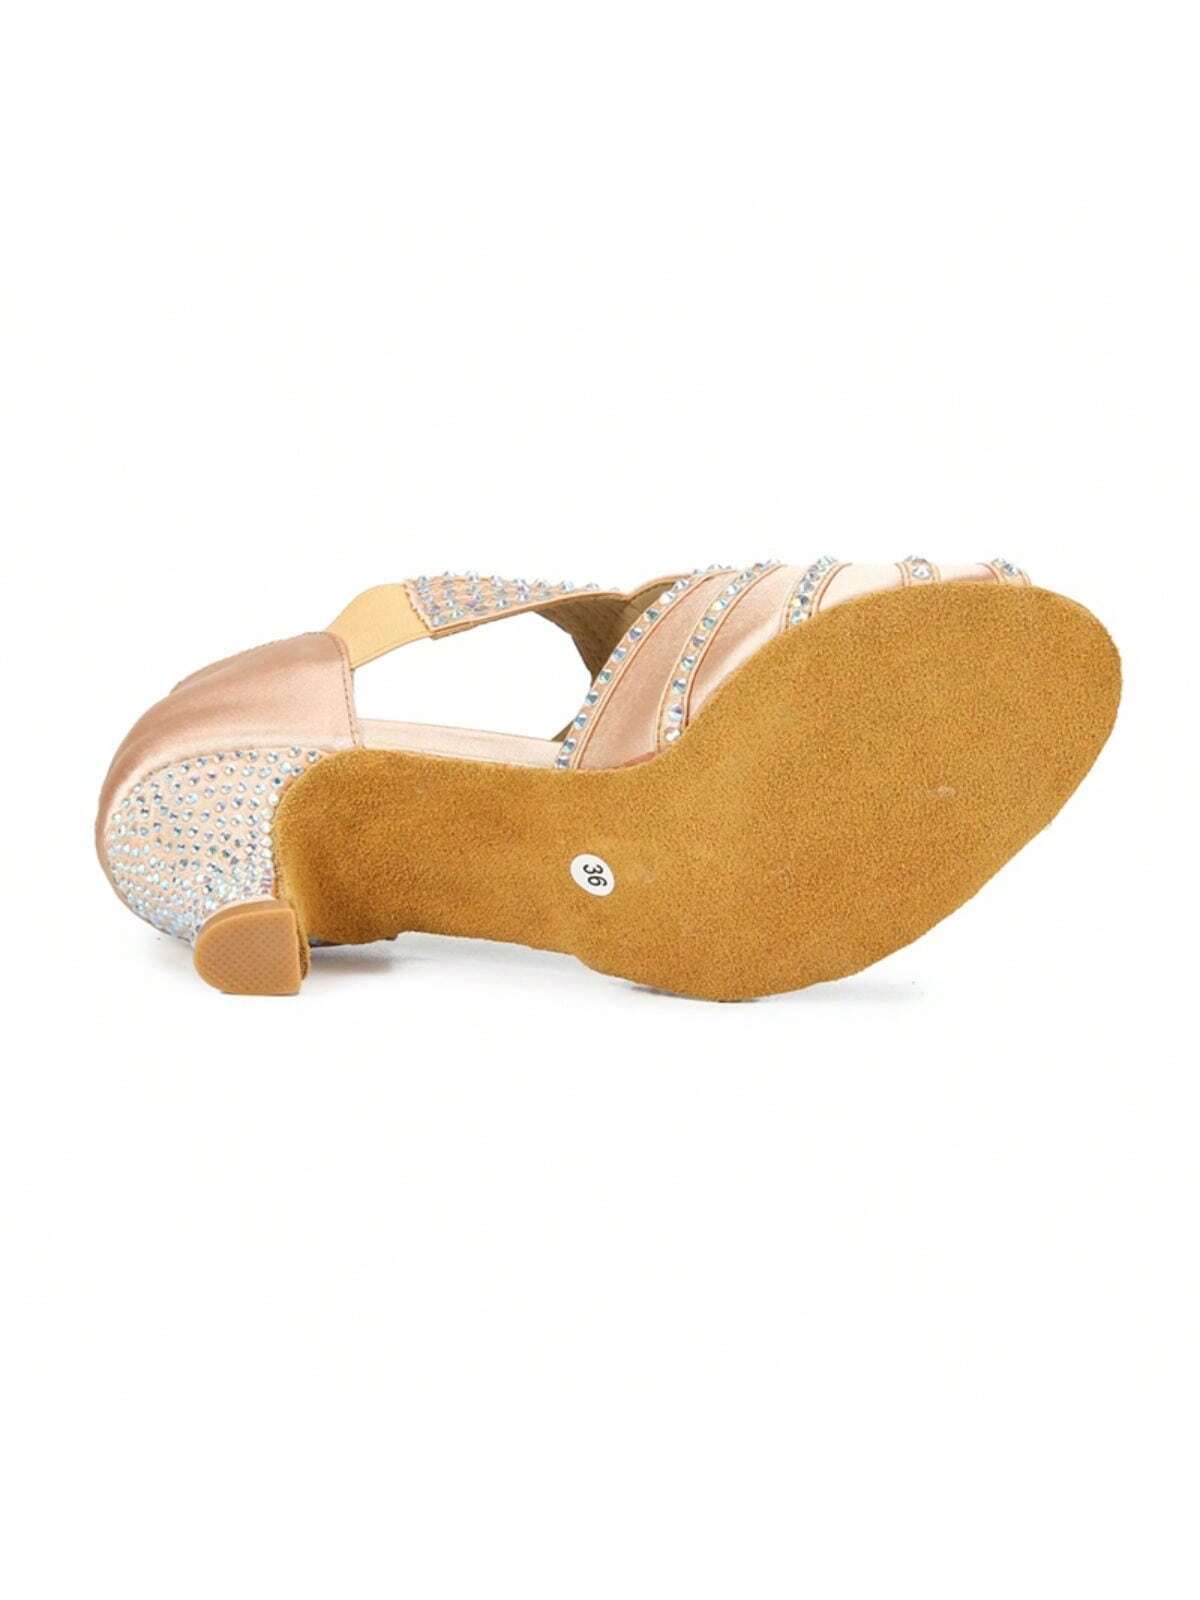 1 Pair Apricot Diamond-studded Satin Fashionable Comfortable Mid-heel Latin Dance Tango Dance Social Dance Shoes-Apricot-3